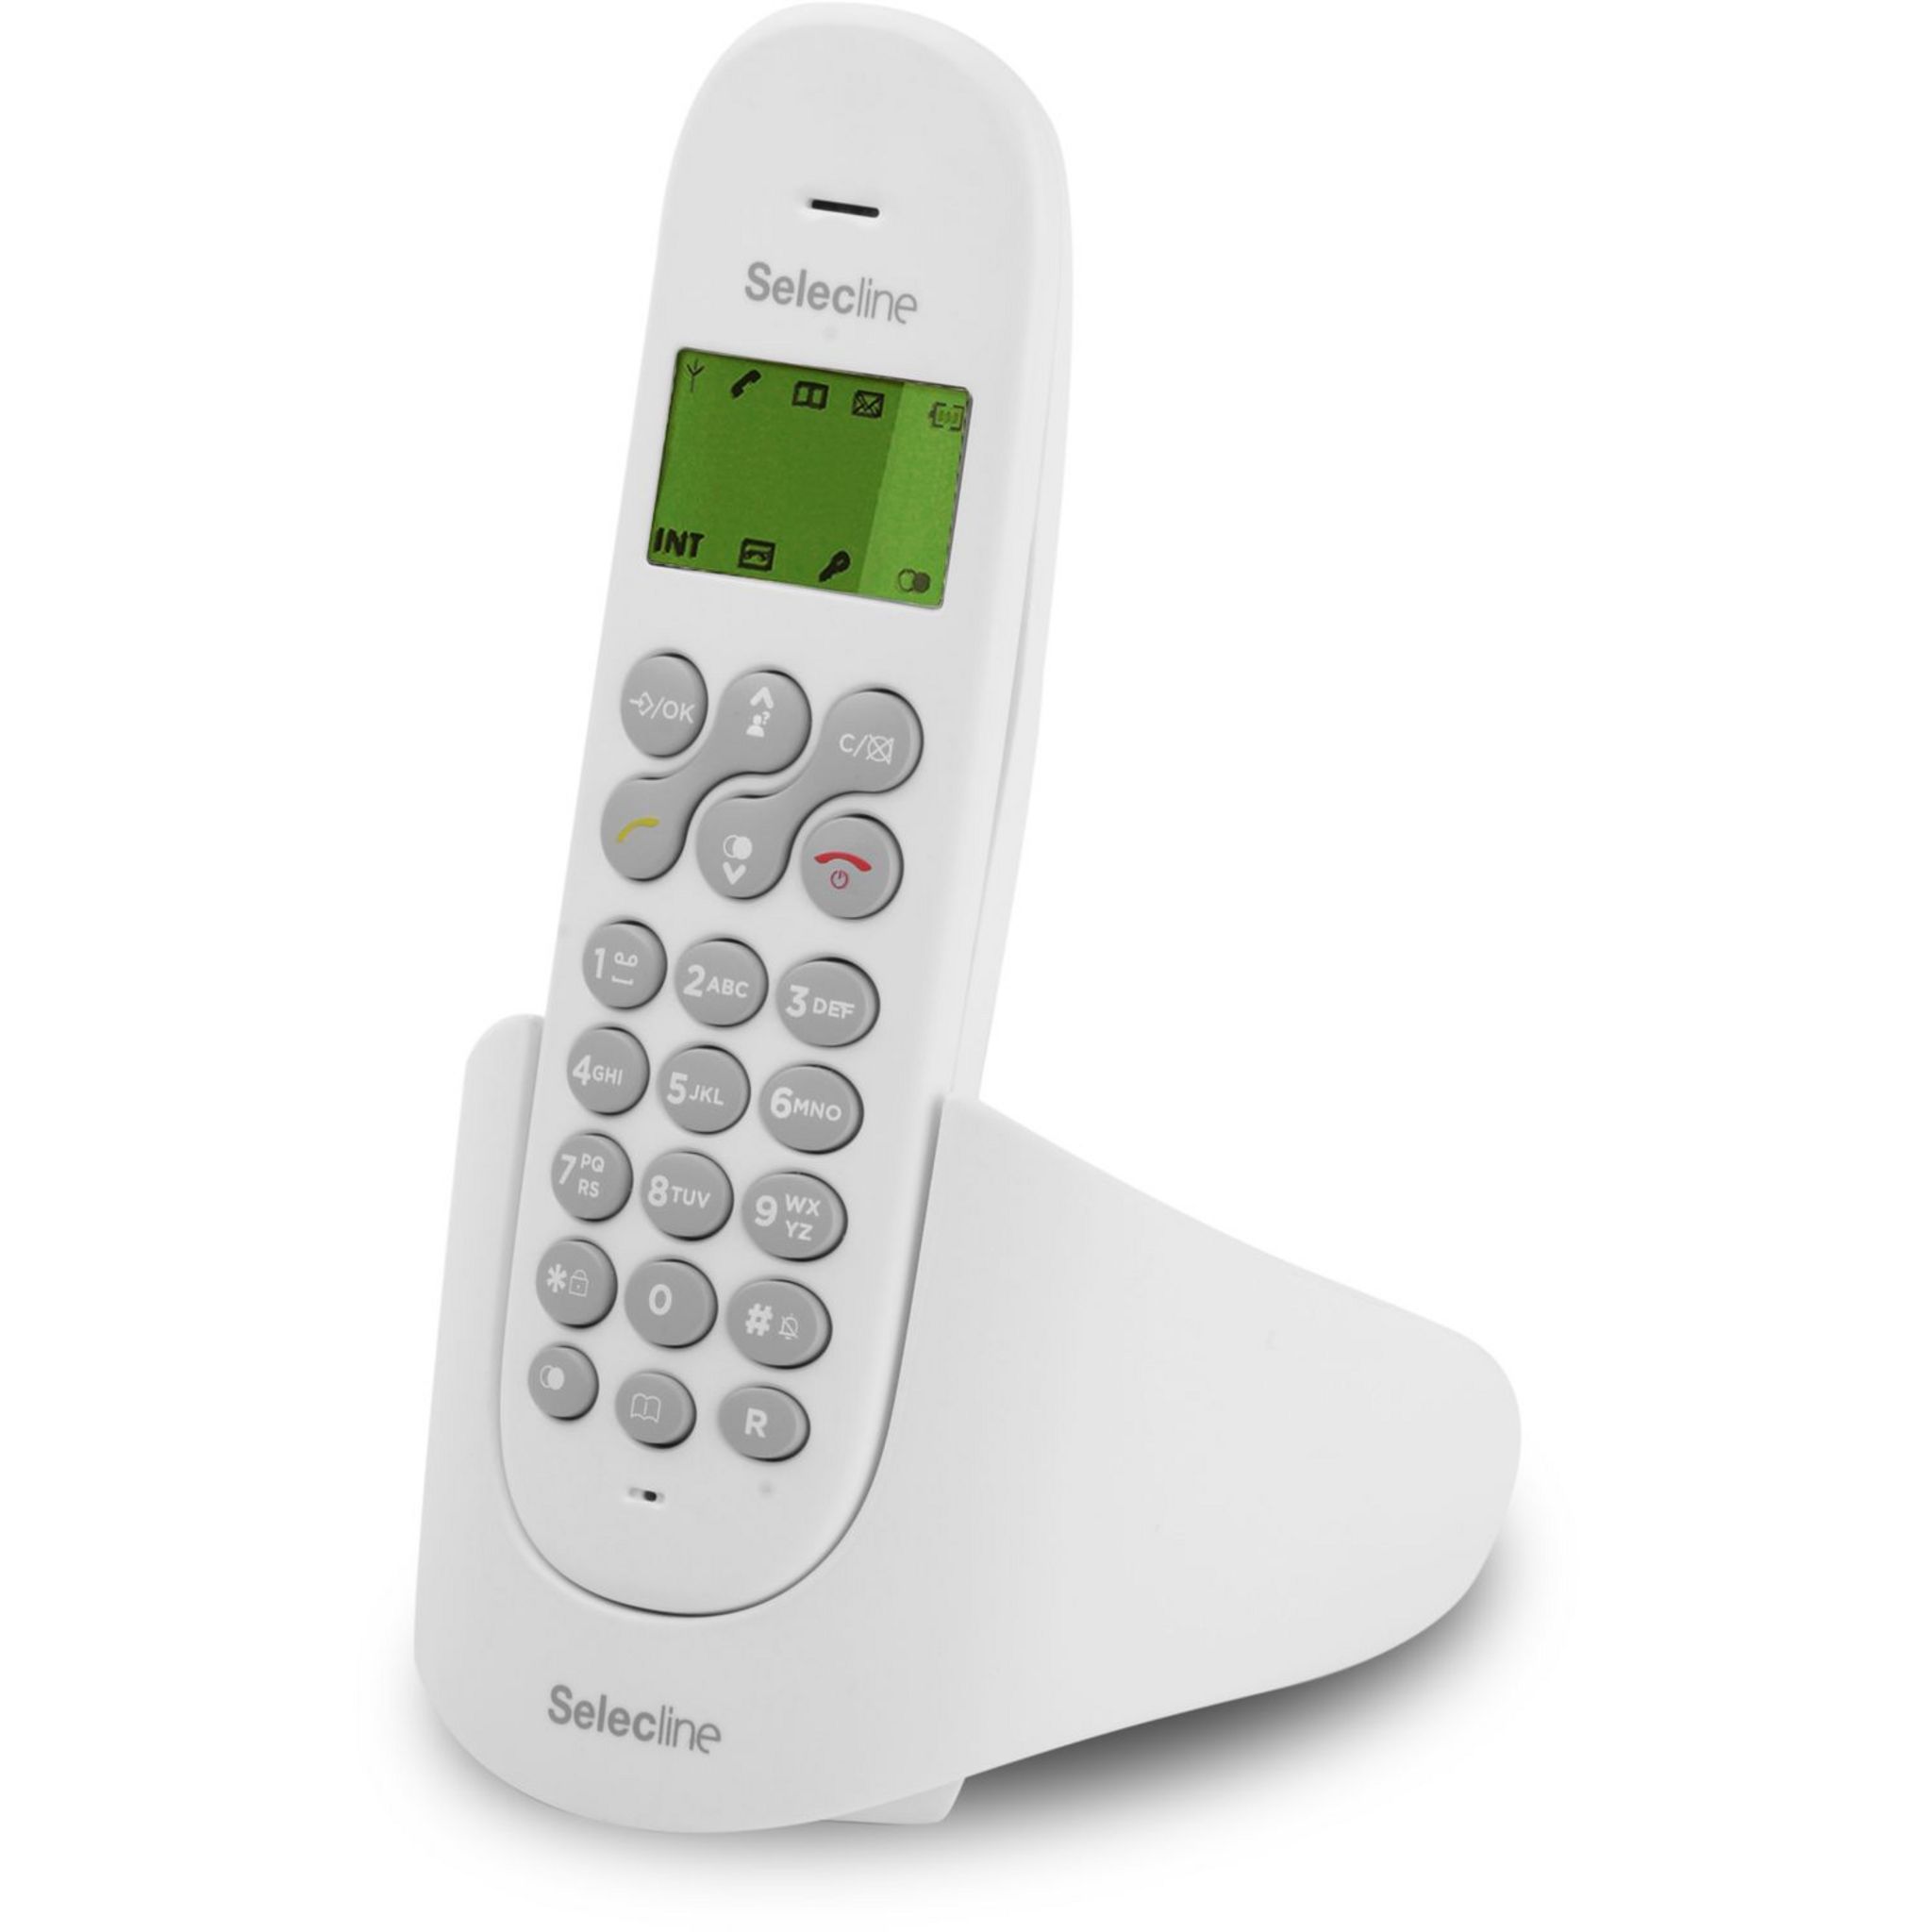 Air – Téléphone fixe sans fil avec écran éclairé, identifiant d'appelant,  20 contacts, mode Mute, GAP et mode ECO - Noir